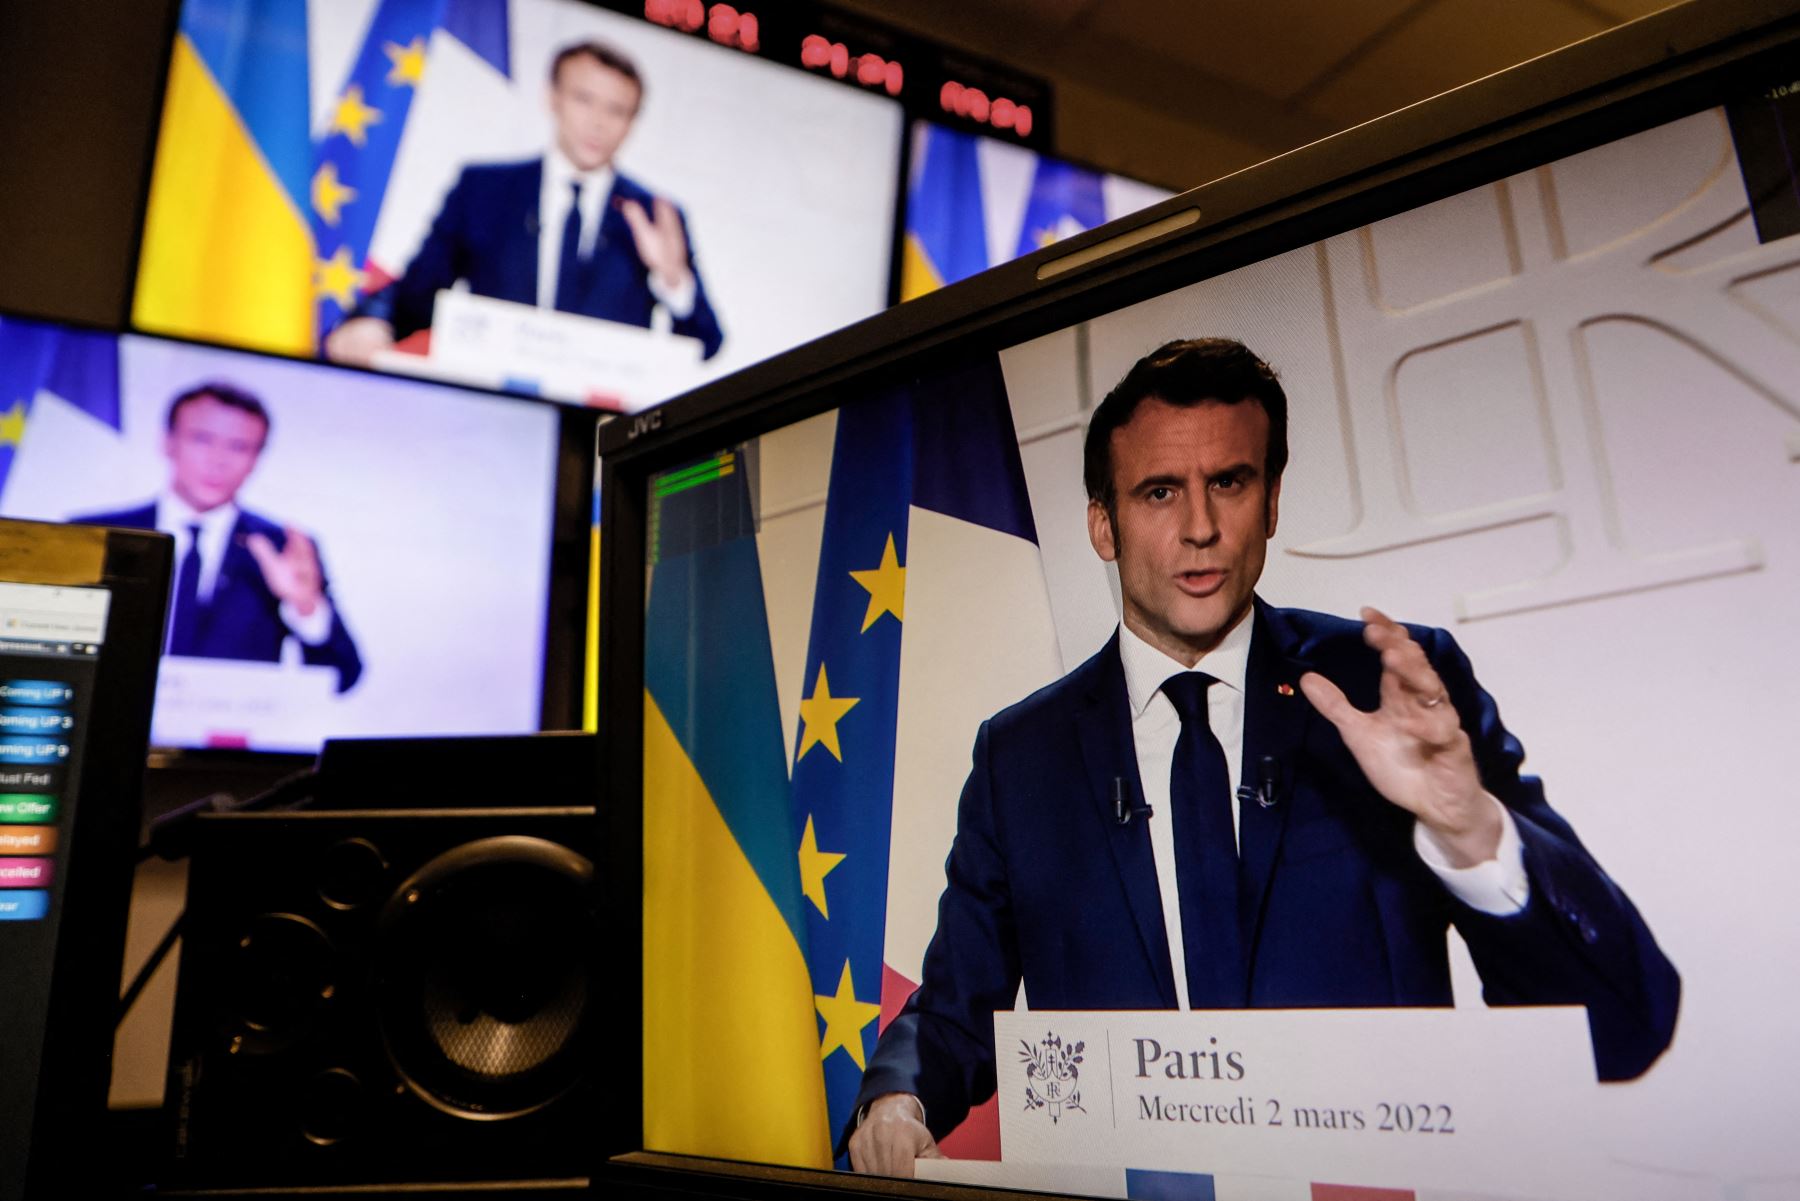 Político francés se dispone a tentar una reelección en un país clave en Europa, actualmente azotada por la guerra entre Rusia y Ucrania. Foto: AFP